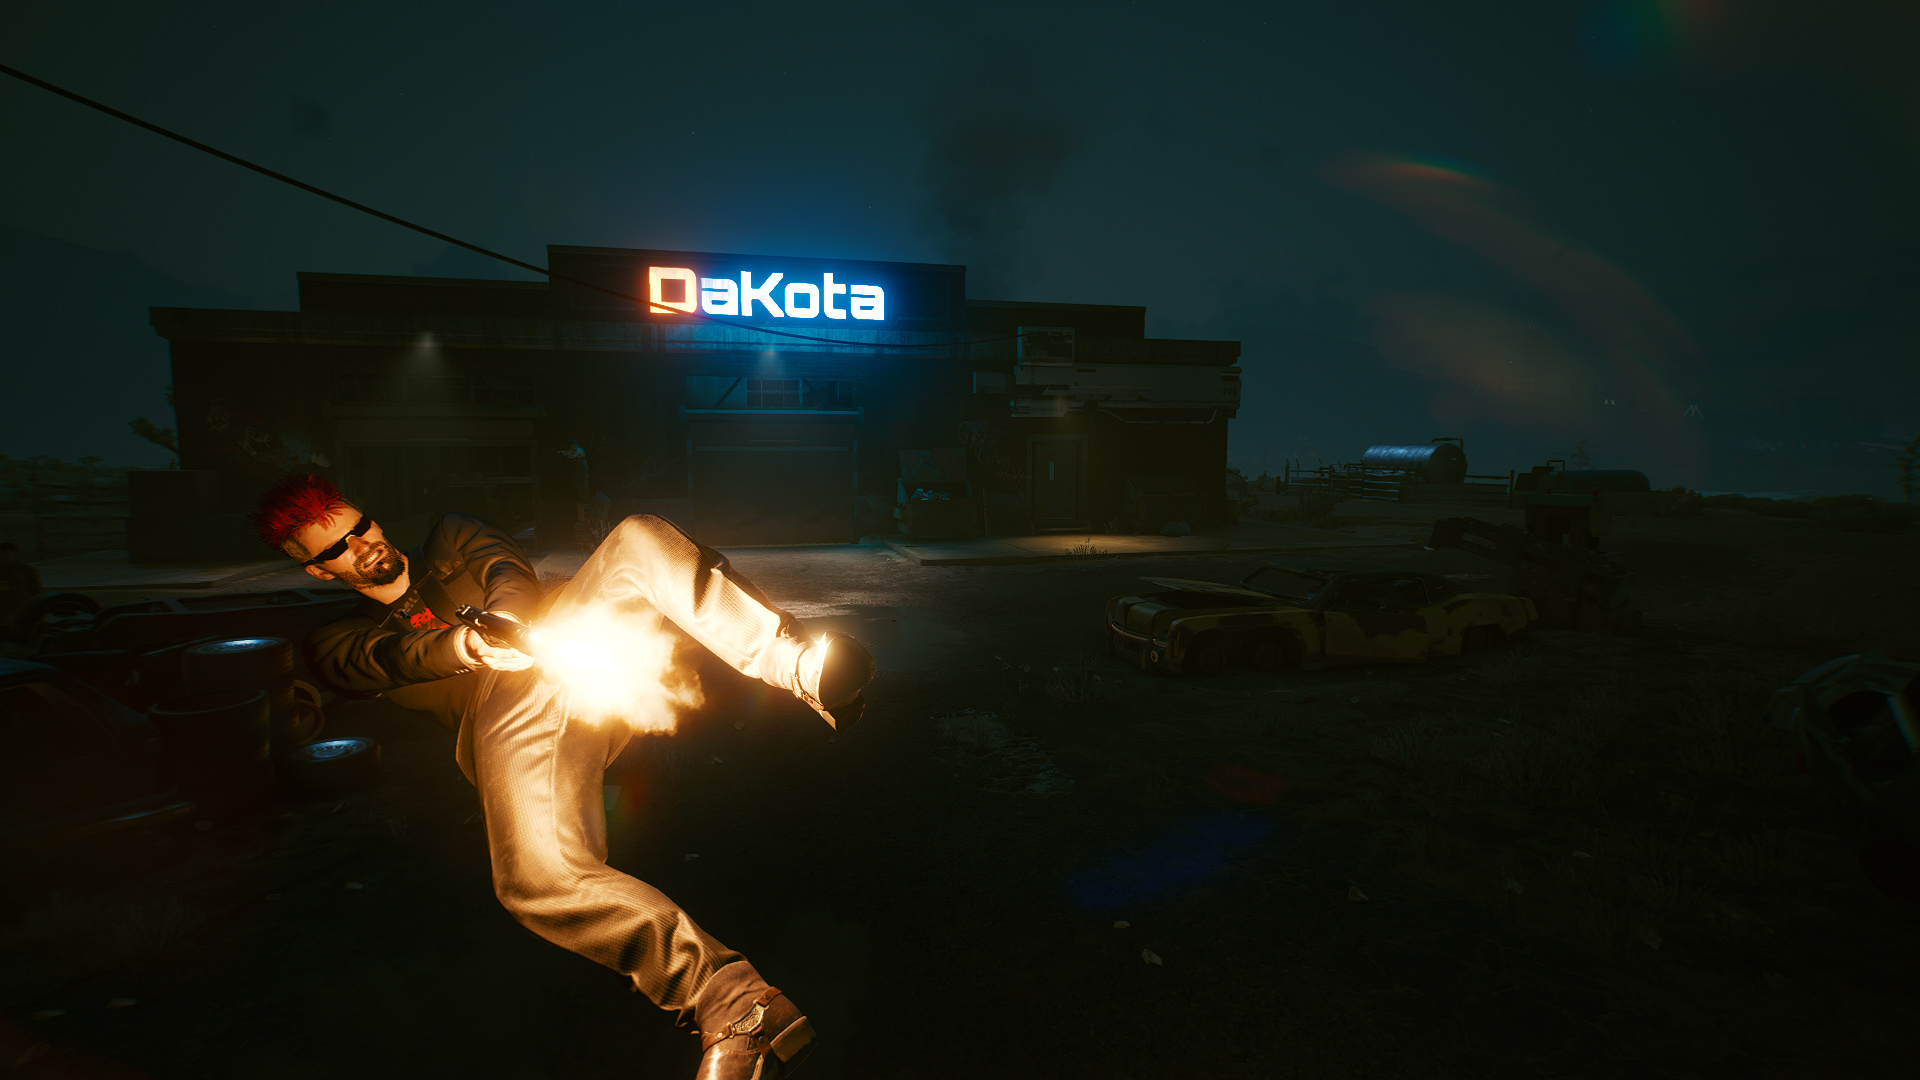 Фото Мужчина в черных очках стреляет из пистолета в падении ночью (Дакота / DaKota)